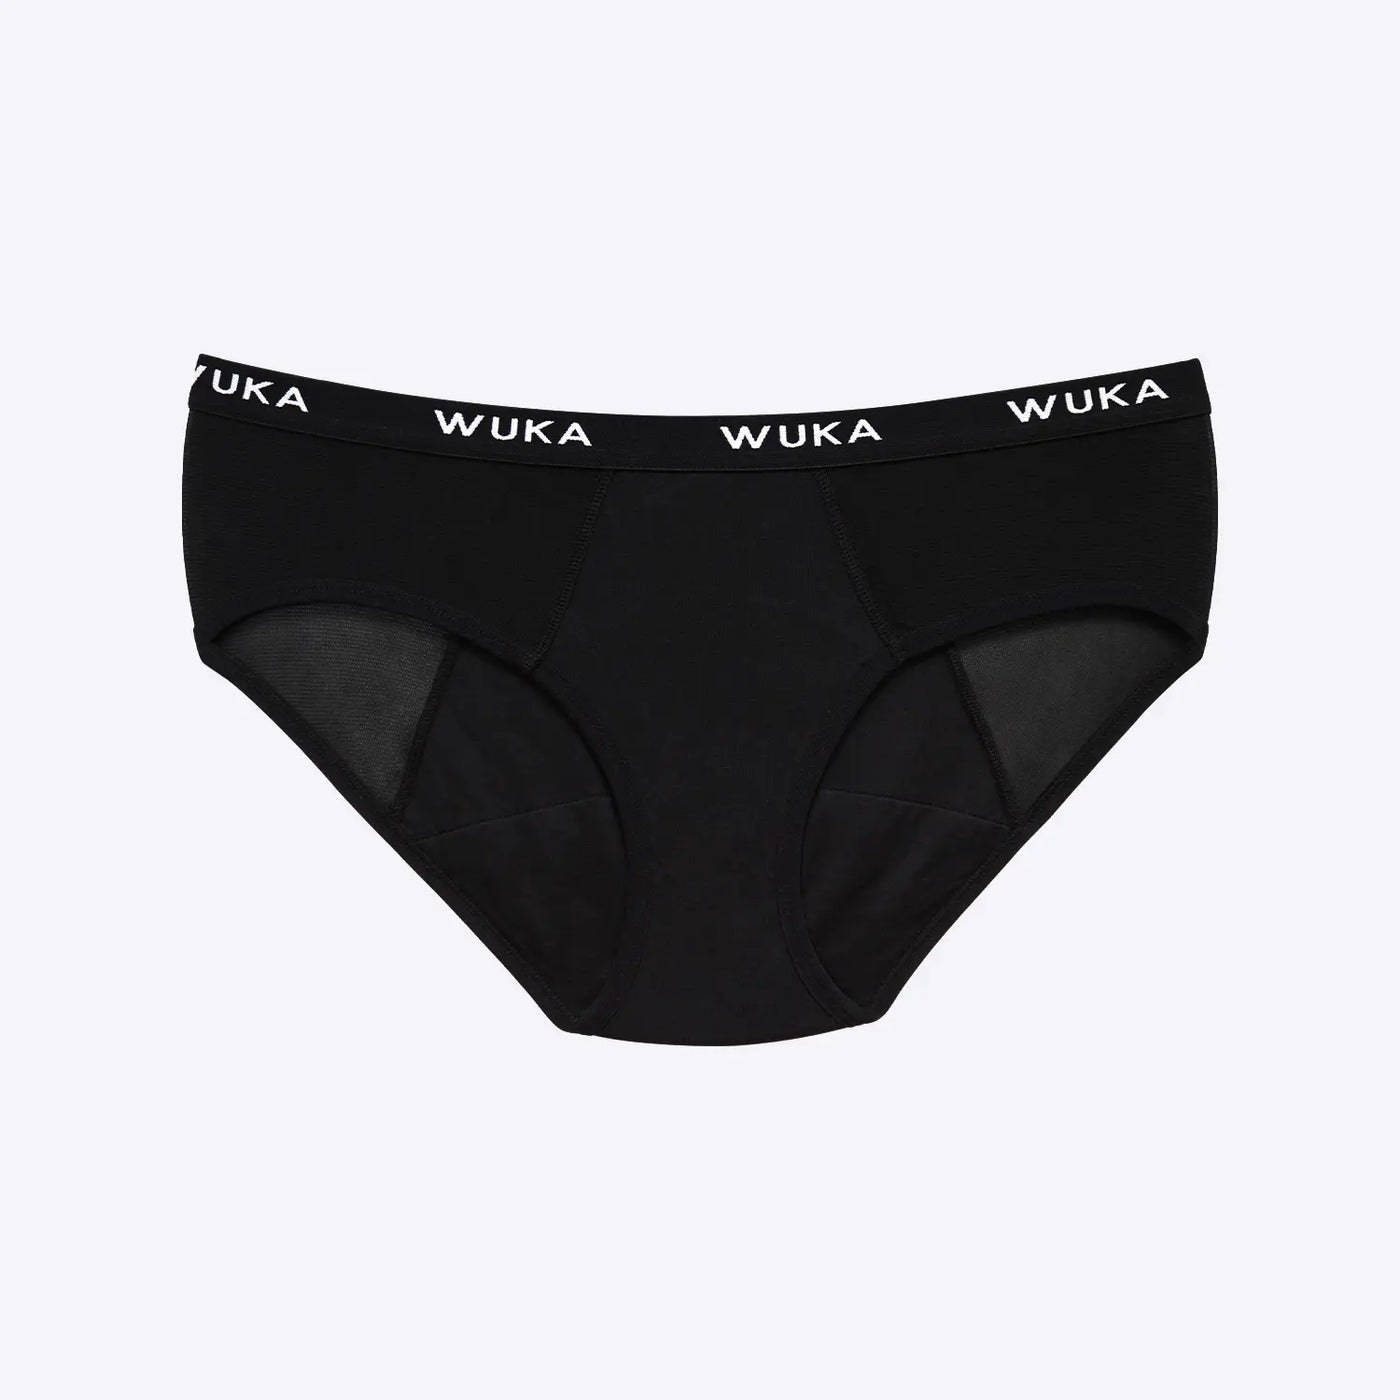 WUKA's period pants: All about Nepali's international brand